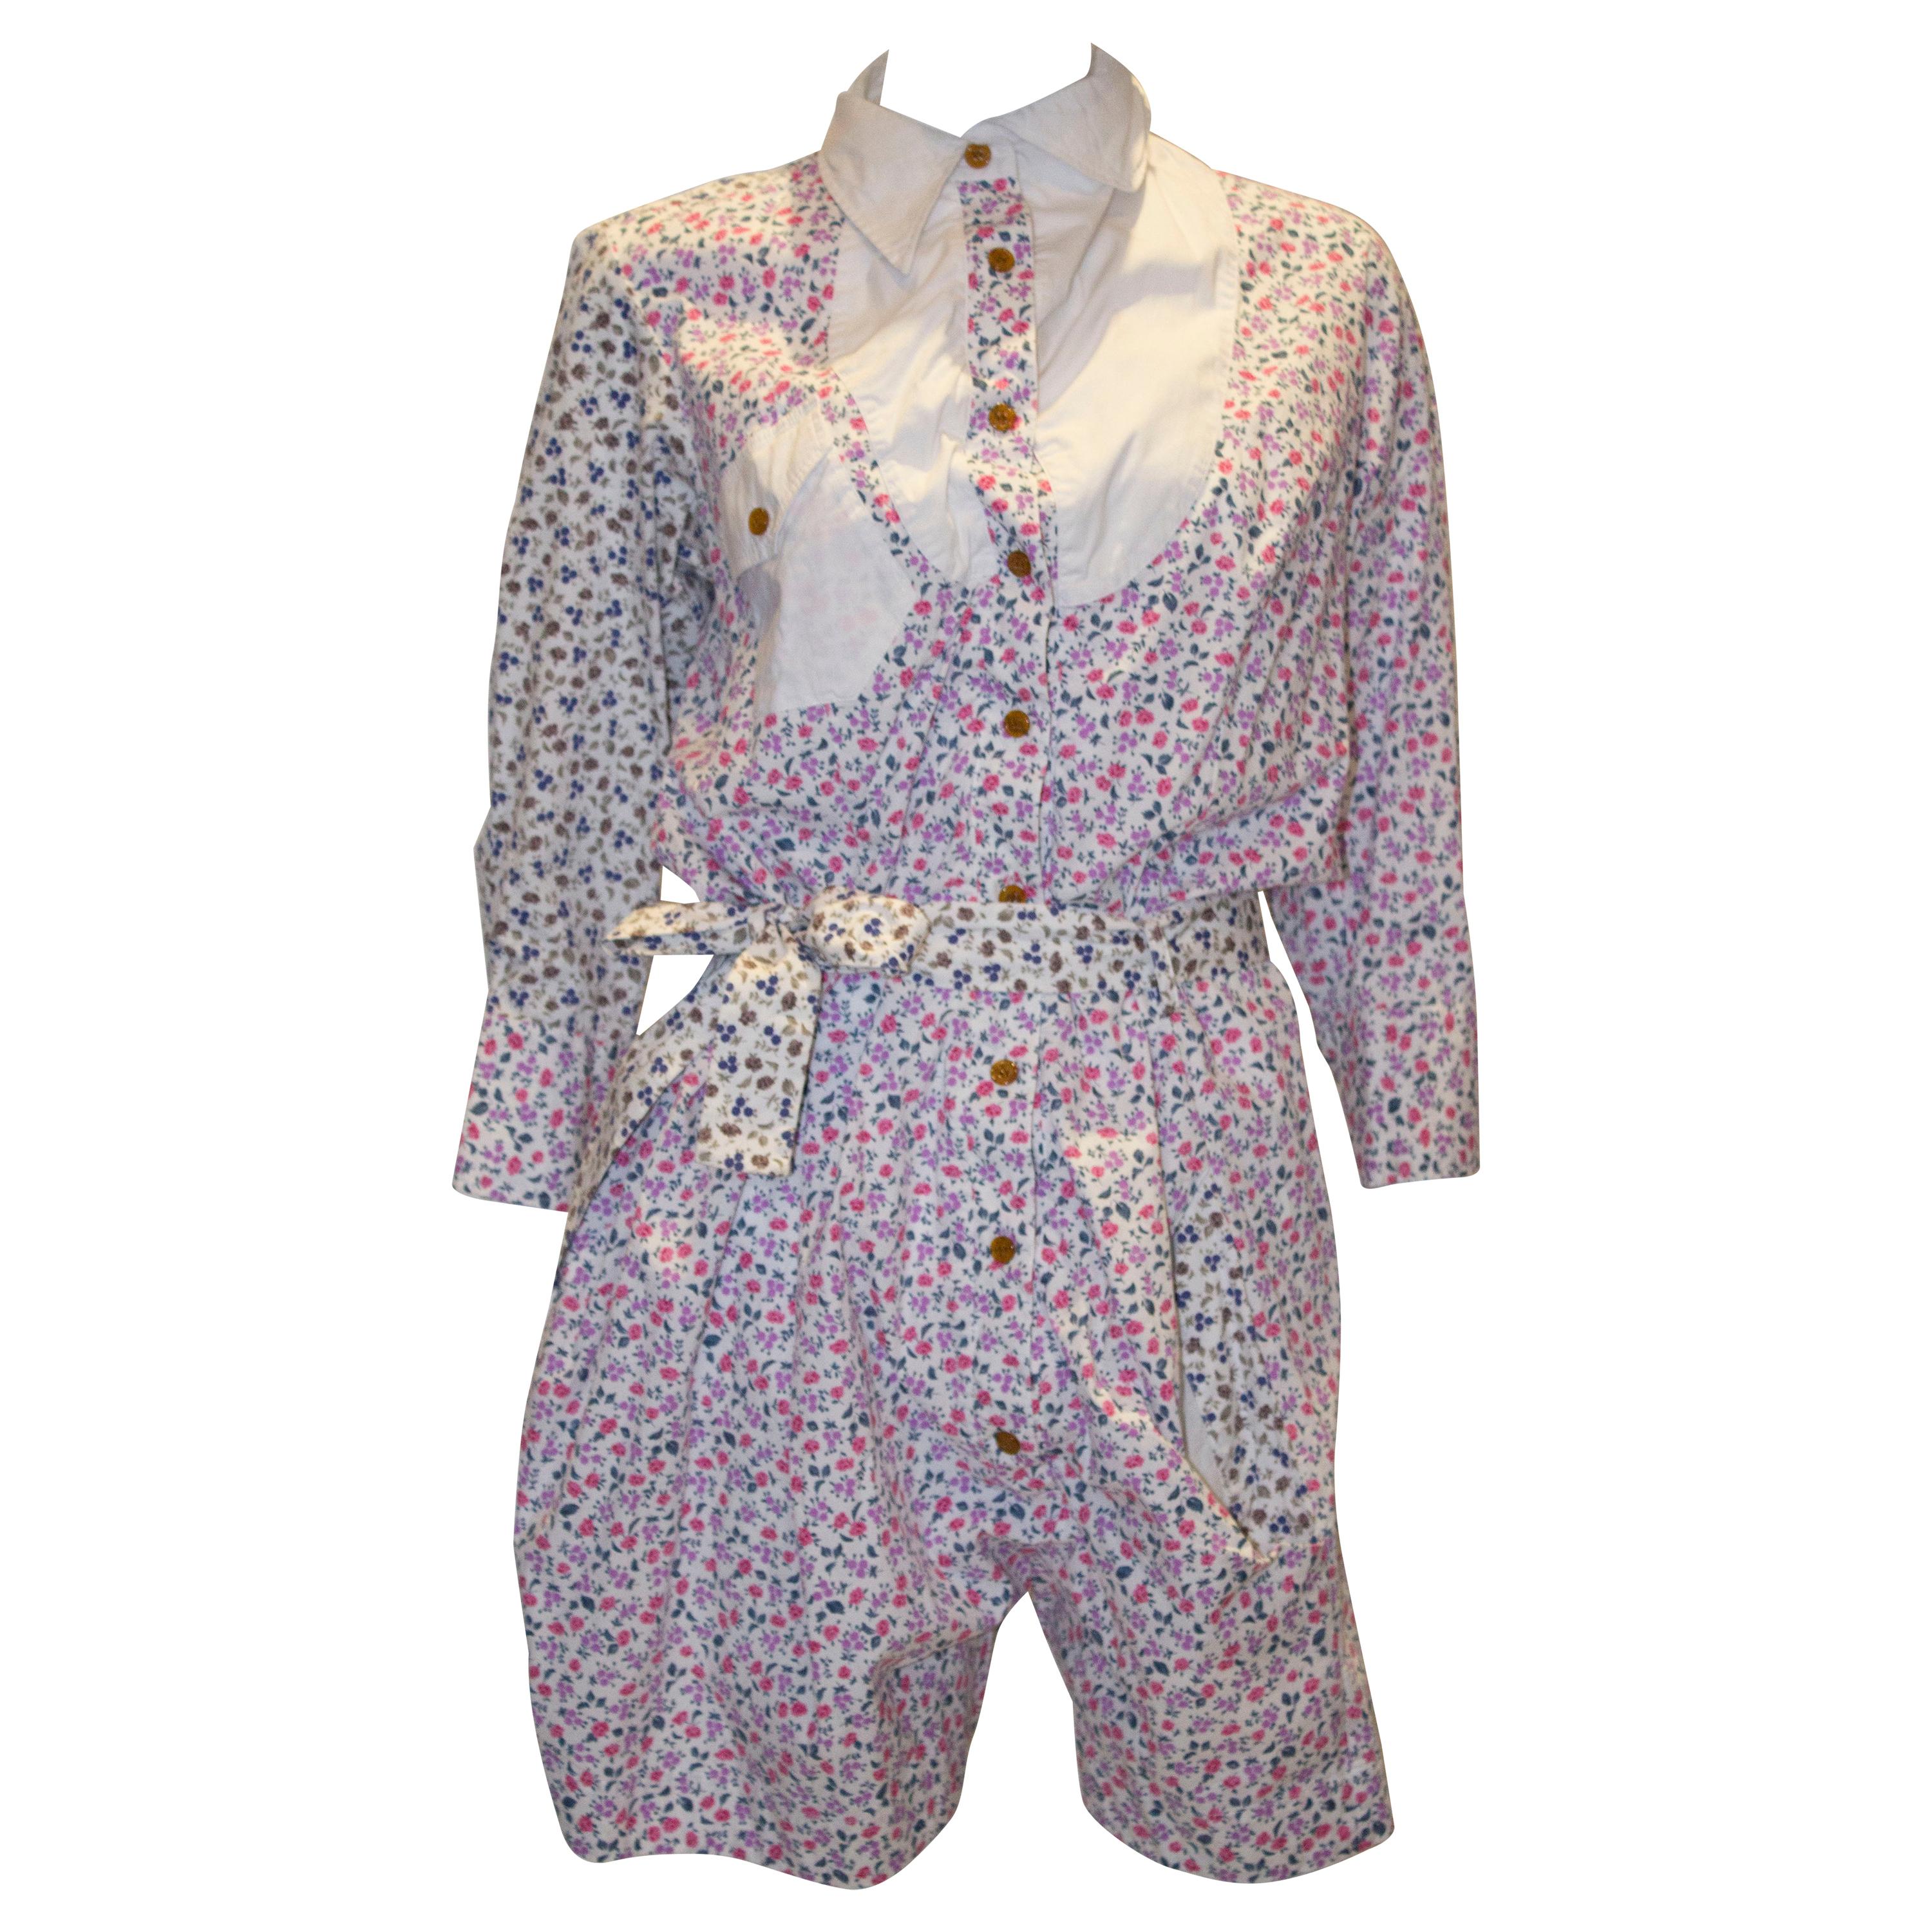 Vivienne Westwood Floral Cotton Playsuit